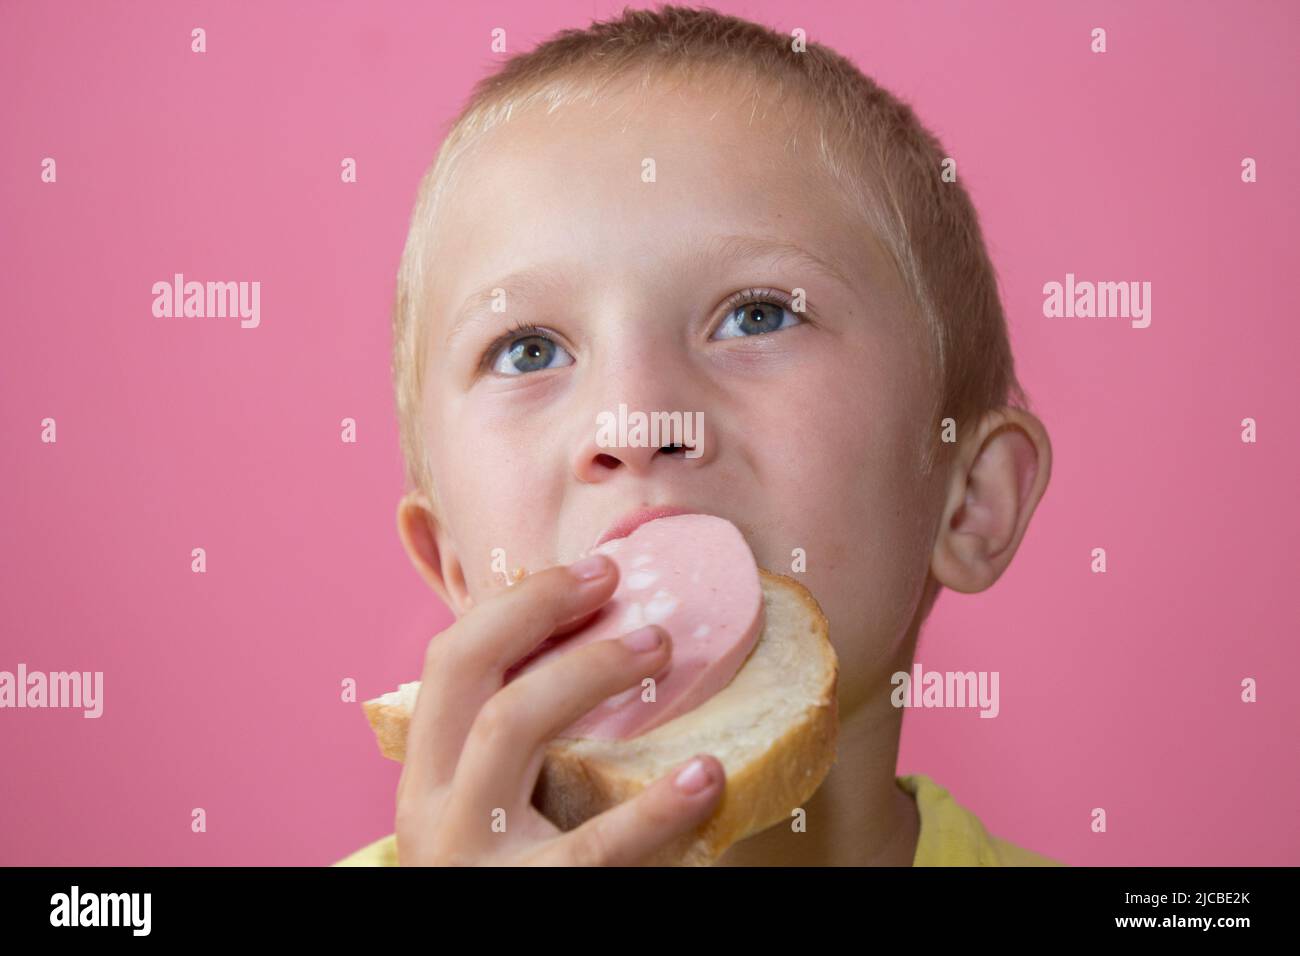 Junge isst ein Sandwich mit gekochter Wurst und sieht interessiert aus Stockfoto